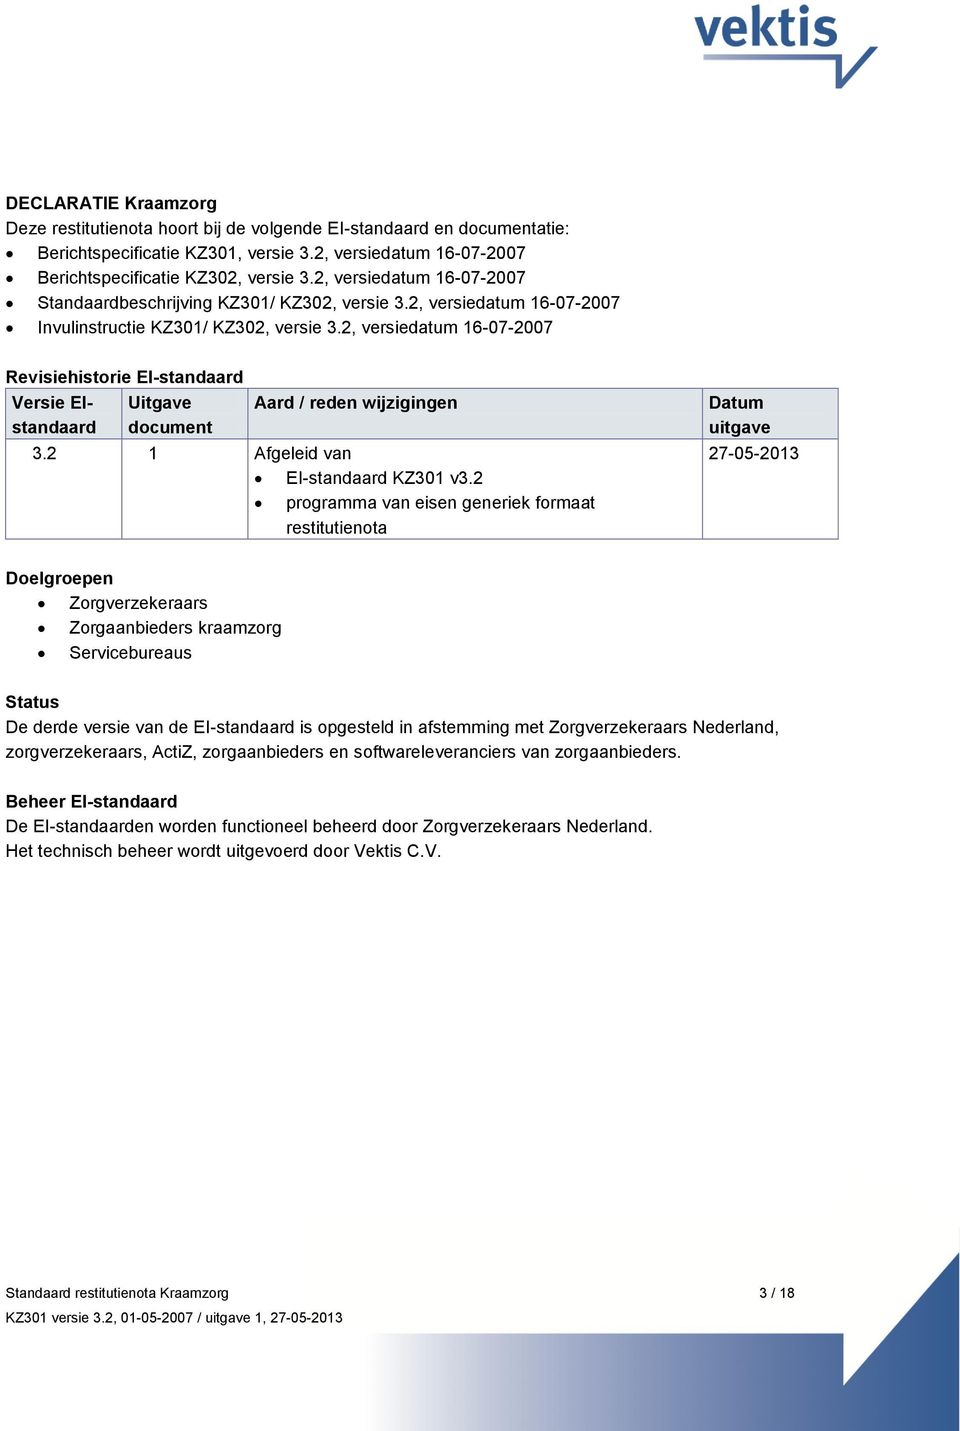 2, versiedatum 16-07-2007 Revisiehistorie EI-standaard Versie EIstandaard Uitgave document Aard / reden wijzigingen 3.2 1 Afgeleid van EI-standaard KZ301 v3.